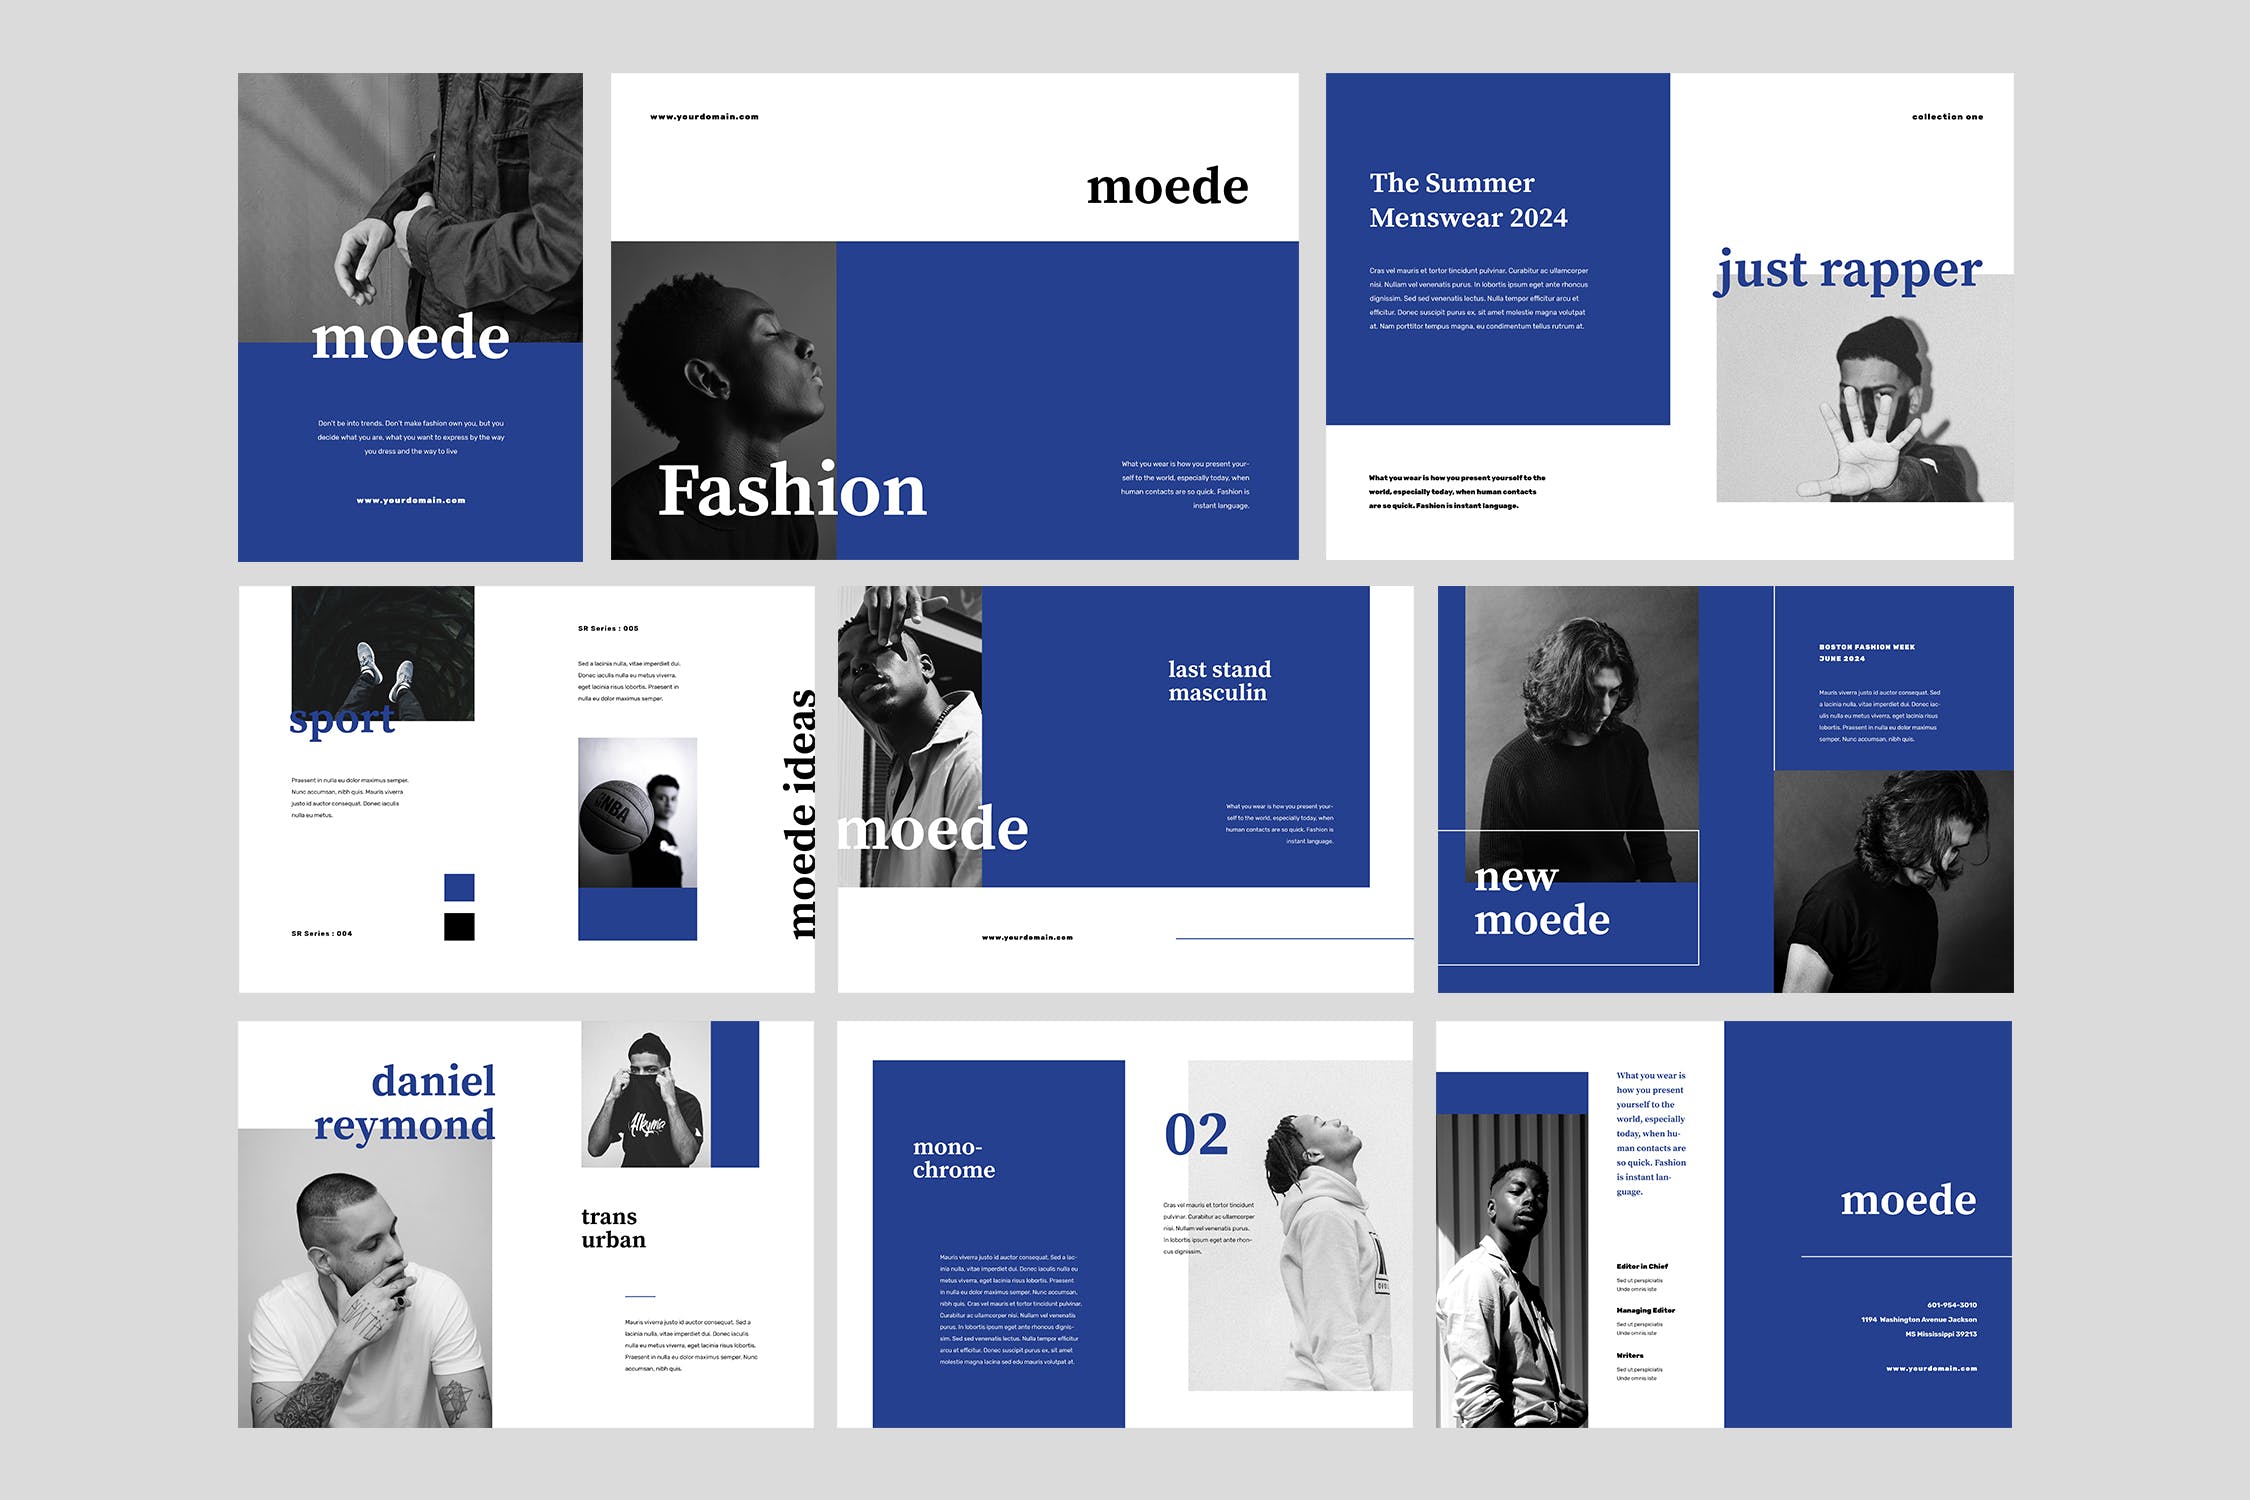 高端时尚服装品牌产品素材库精选目录设计模板 Moede Fashion Lookbook Catalogue插图(4)